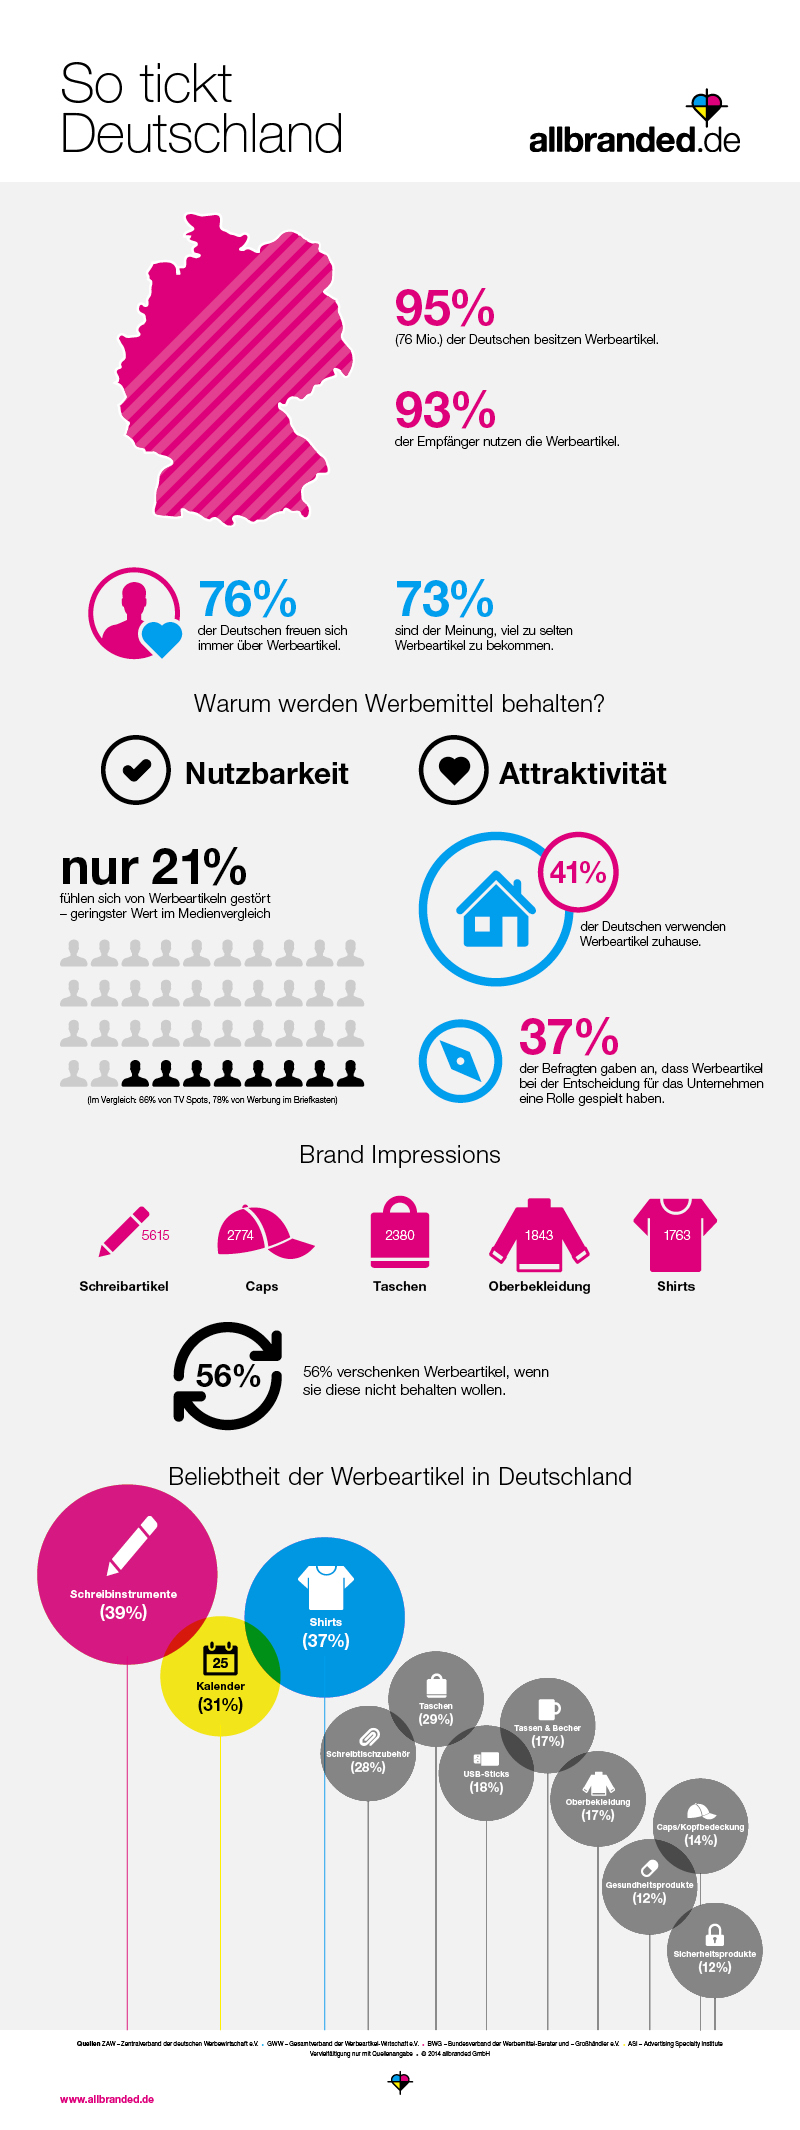 Infografik "So tickt Deutschland" zum Thema Werbegeschenke und Give aways